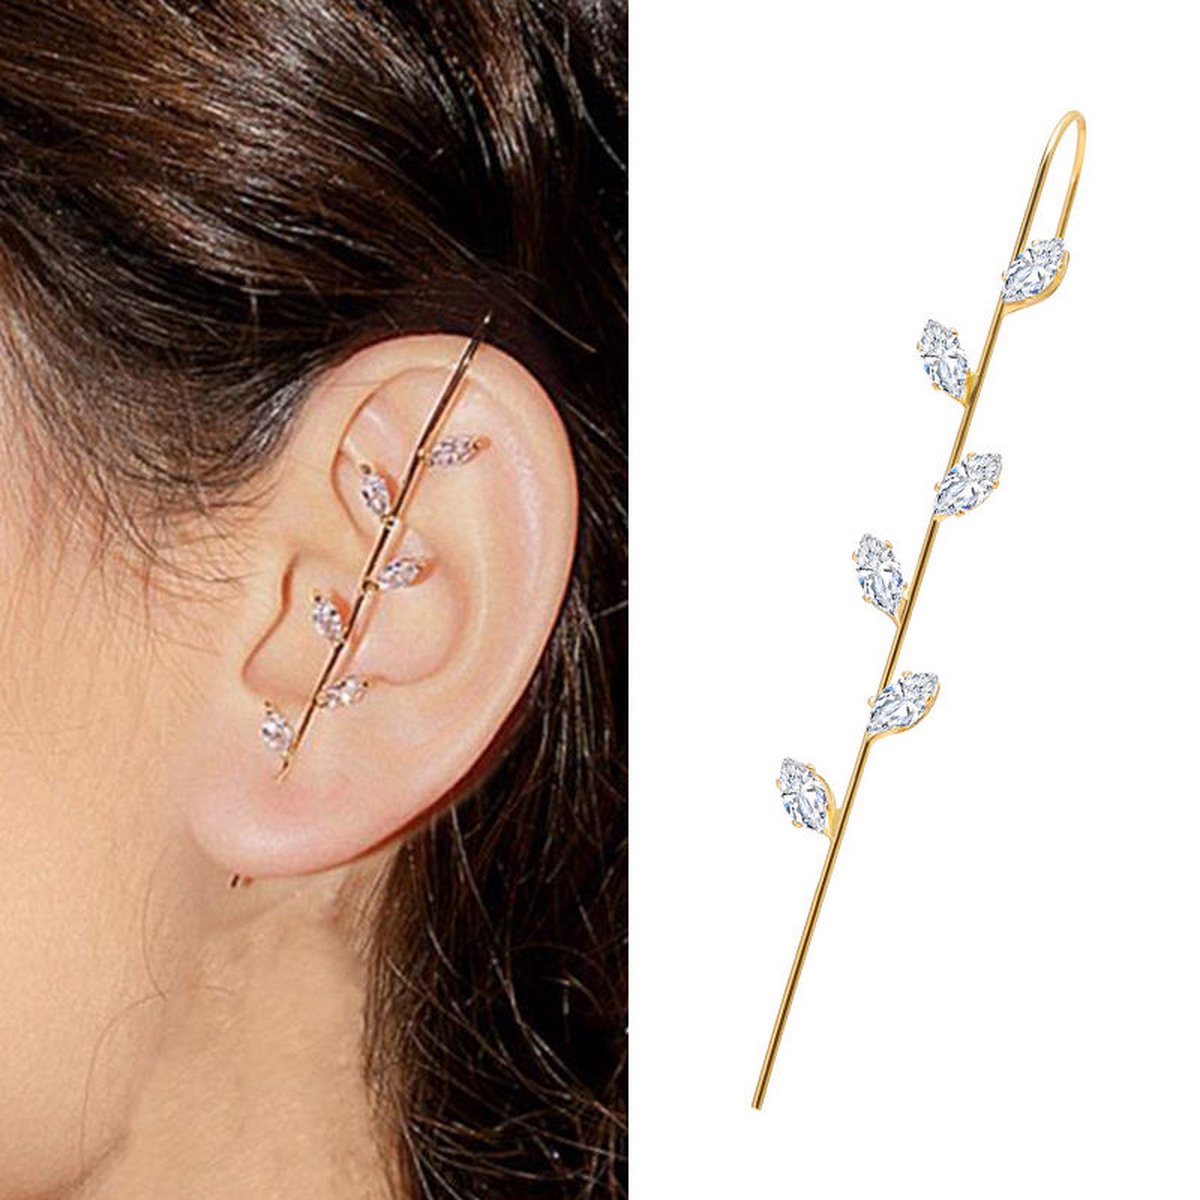 Dear Lune - Earring Piercing - 1 piece - Oorbel - Hook Earrings - Zirconia - Simple - Elegant - Style 003